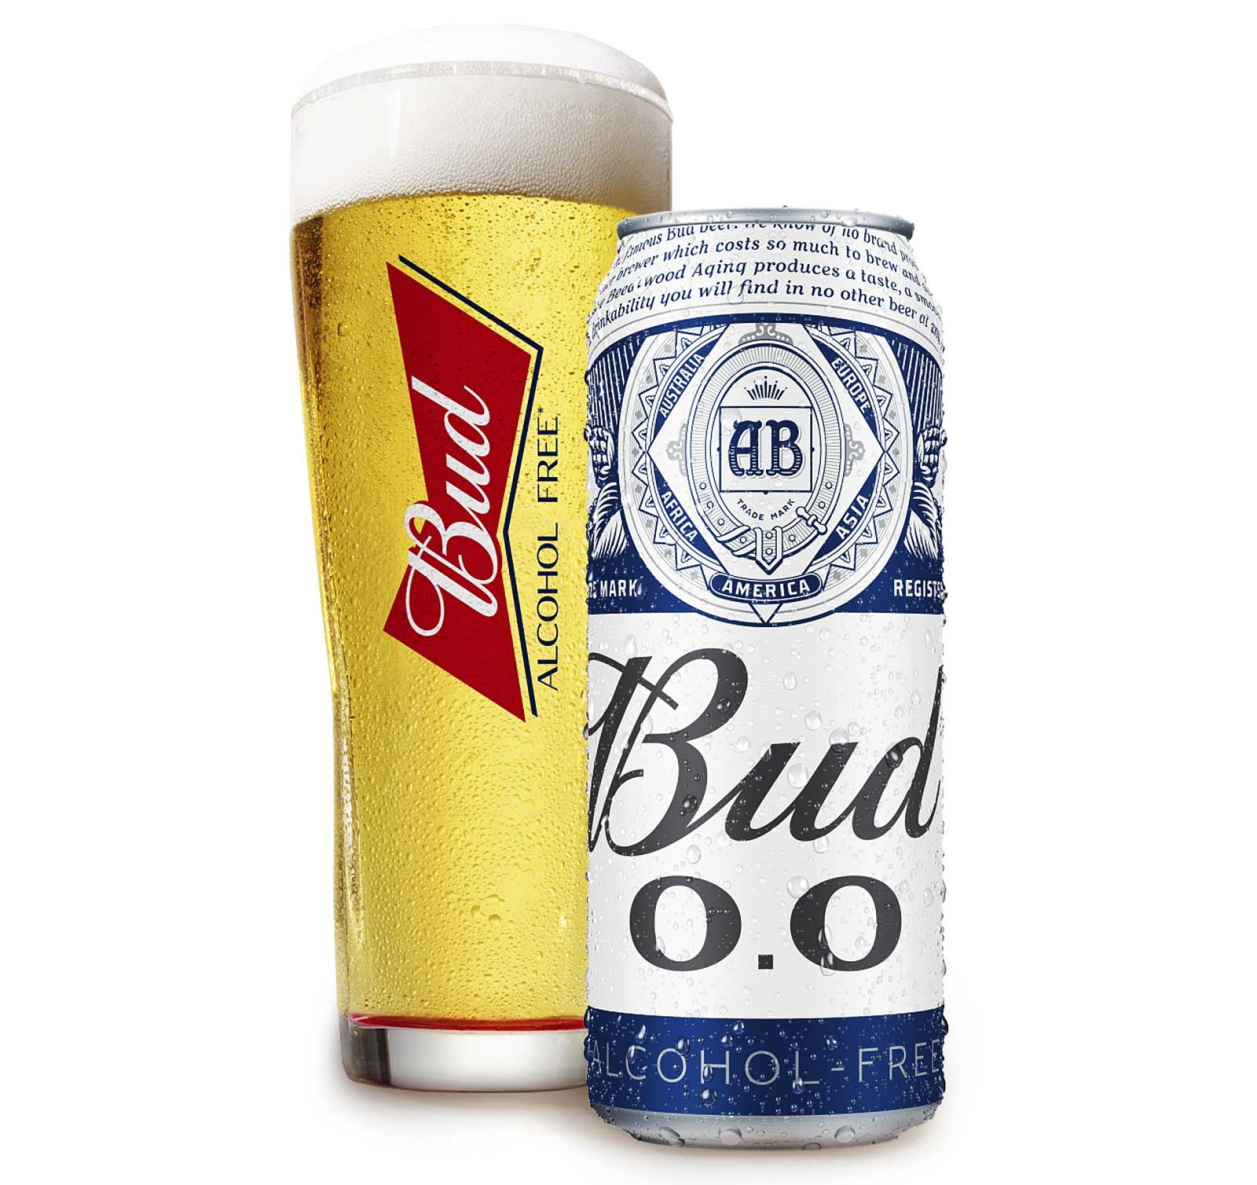 Безалкогольная пивоварня. Пивной напиток БАД Б/А 0.45Л Ж/Б. Пивной напиток БАД безалкогольный 0,45л ж/б. Пиво БАД жб 0.45. Пиво БАД Б/А 0,45 жб 0%.